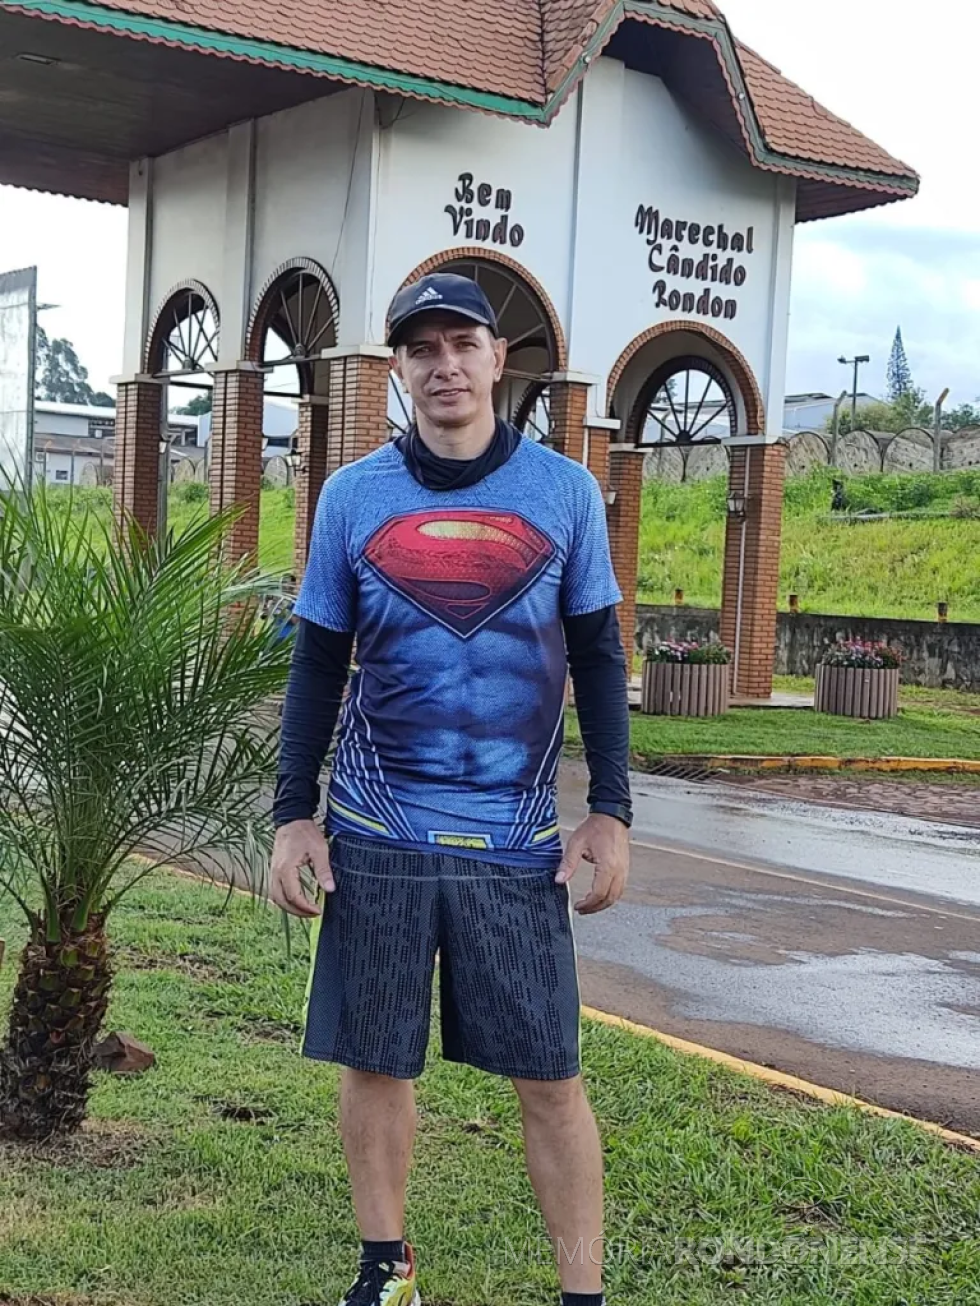 || Charles Araújo no portal de acesso na cidade de Marechal Cândido Rondon, antes de deixar a cidade em seu caminho para o Chuí (RS).
Imagem: Acervo Sirley Smaniotto e Jair Fuchs - FOTO 23 -